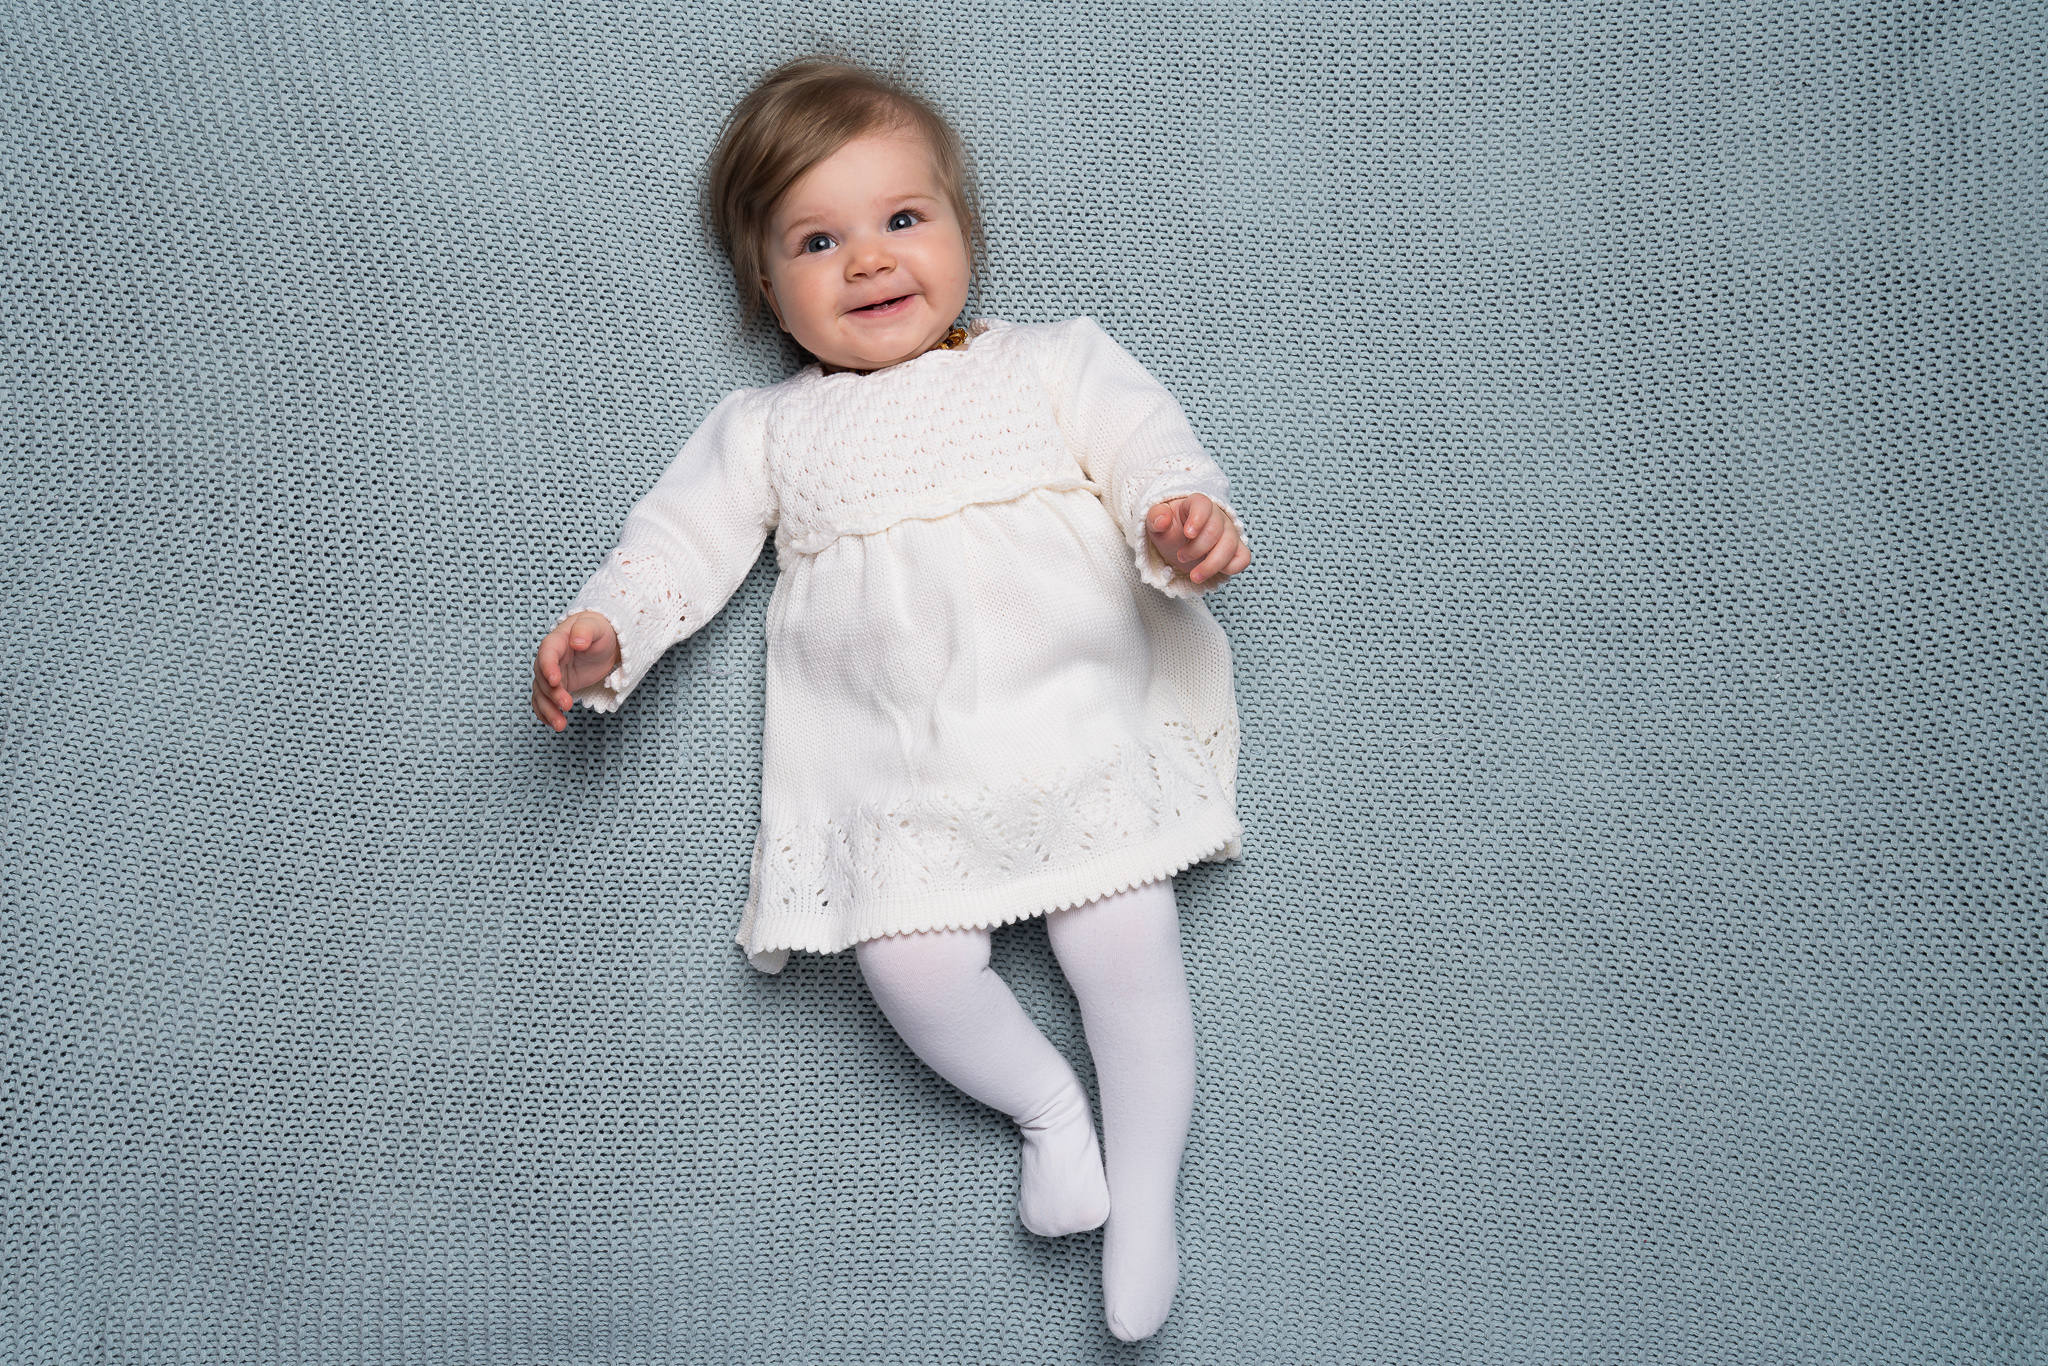 Kleding Meisjeskleding Babykleding voor meisjes Jurken Lichtroze jurk met kanten parels en linten Doopjurk. Doop outfit voor baby meisje Jurk slipje en hoofdband voor baby meisje 